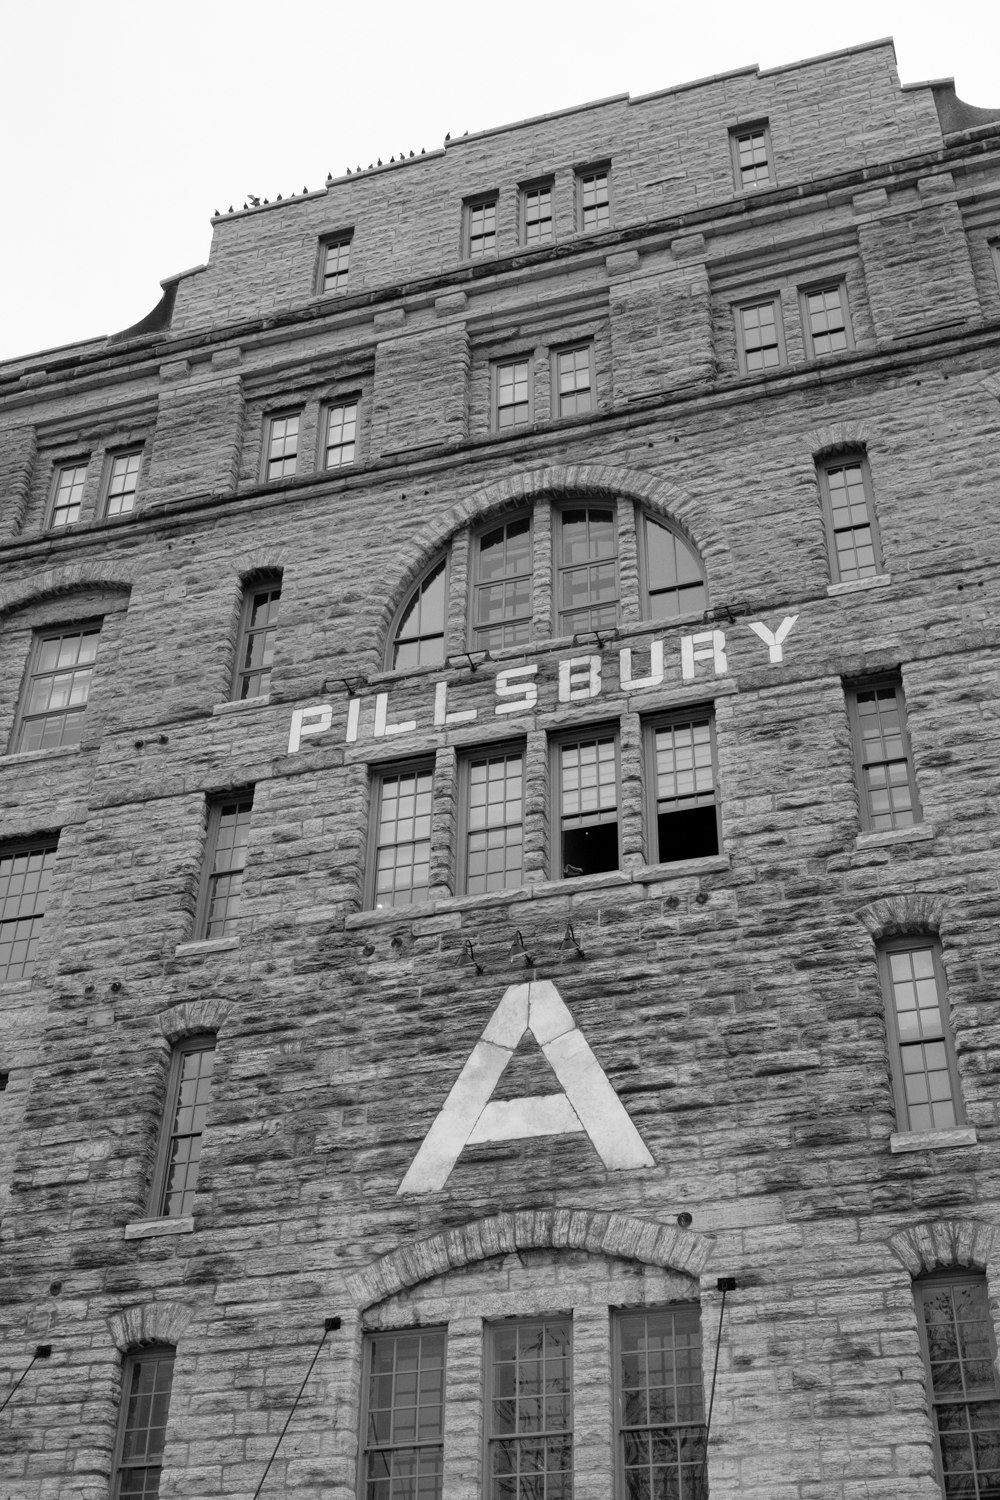 Pillsbury A-Mill